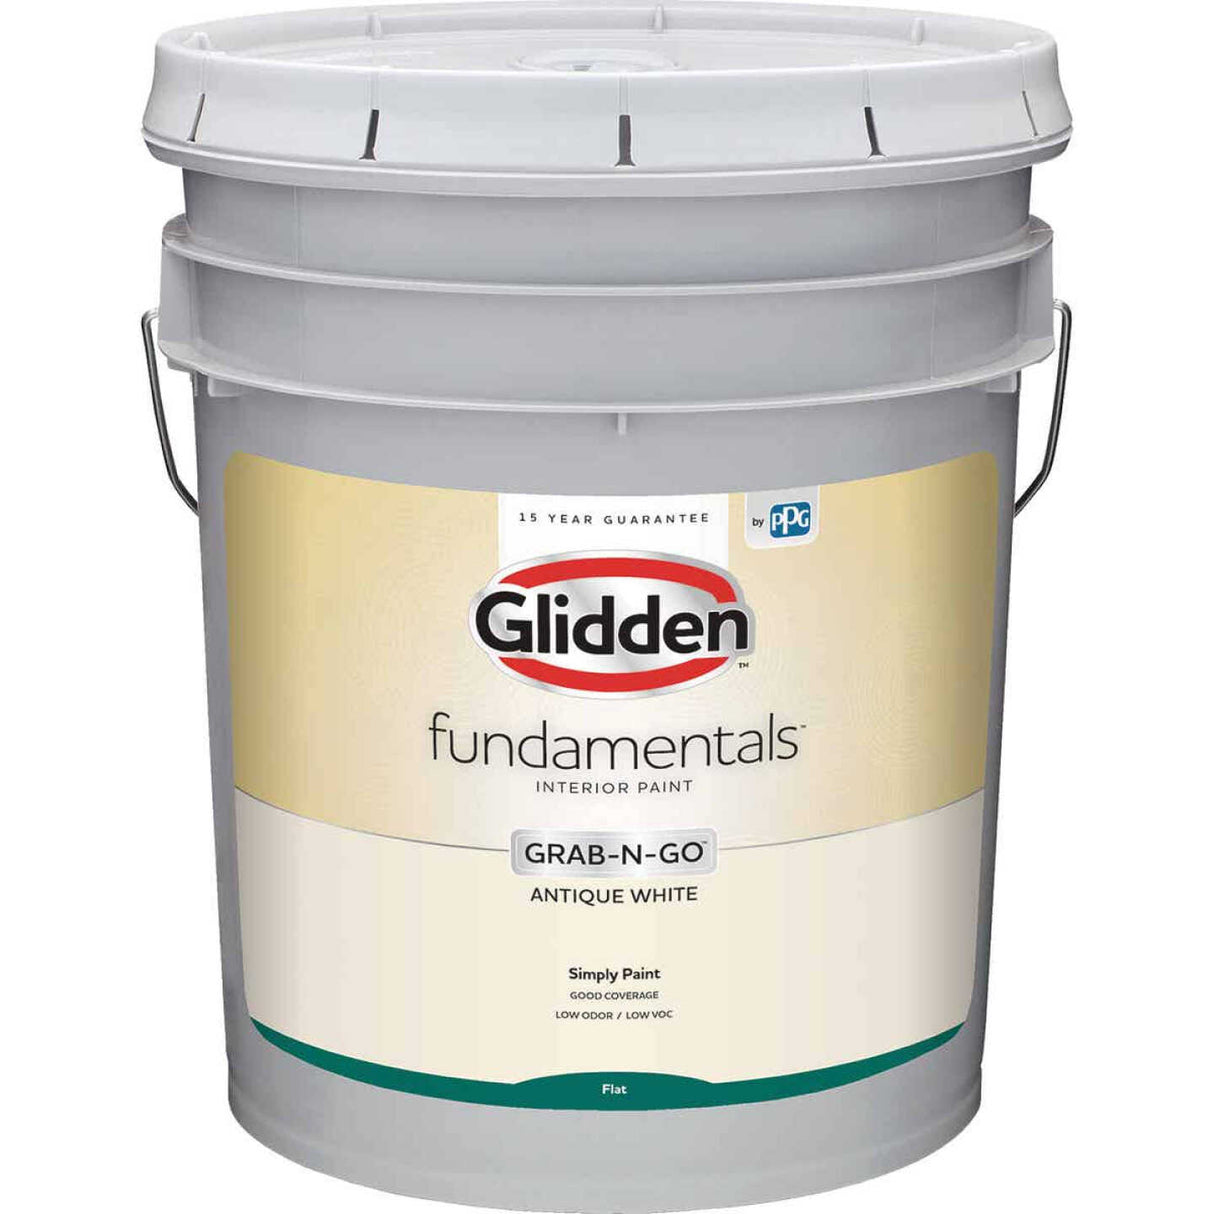 Glidden Fundamentals Grab-N-Go plano blanco envejecido 